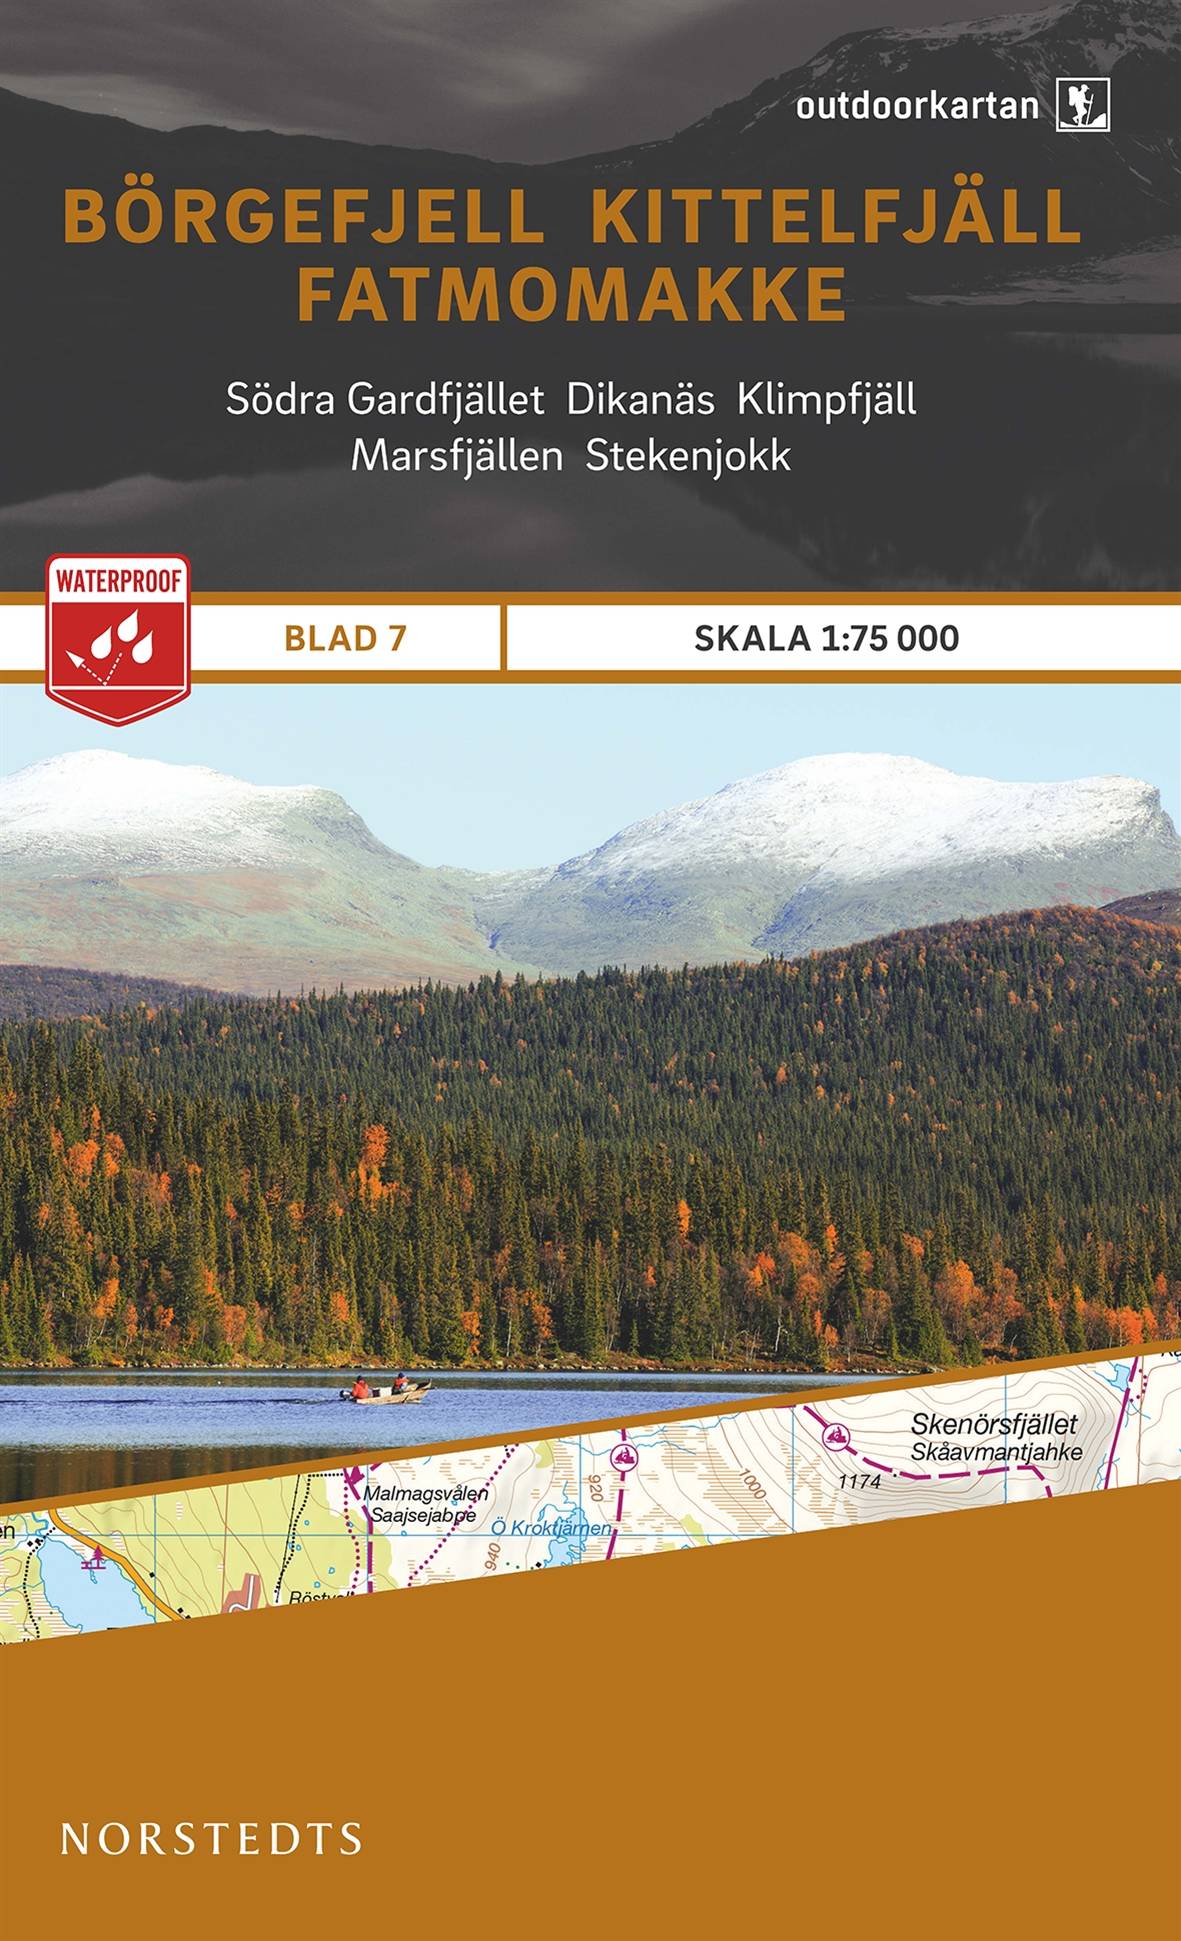 Outdoorkartan Börgefjell Kittelfjäll Fatmomakke : Blad 7 skala 1:75000